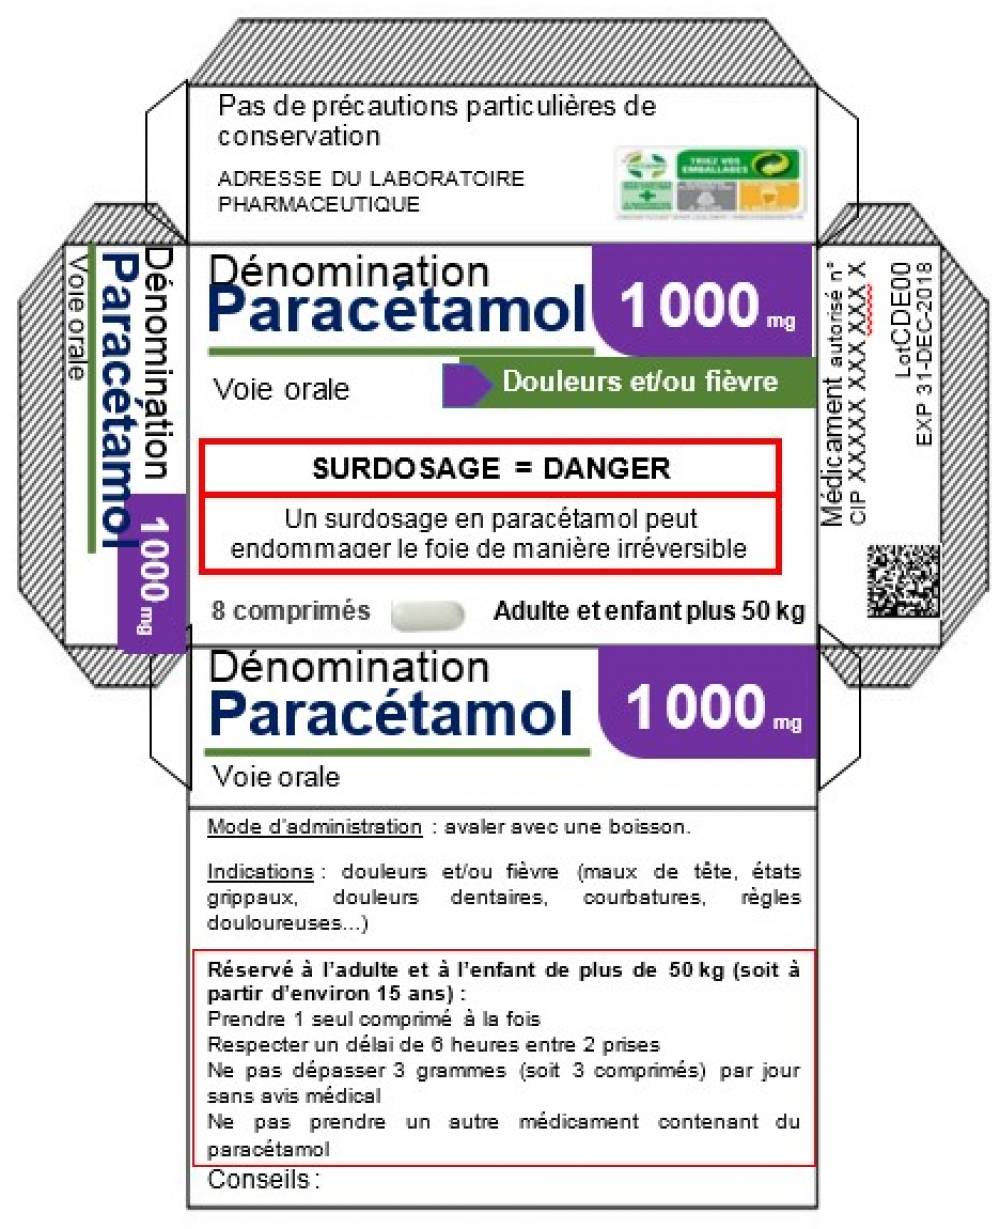 Exemple 1 : Cas d'un médicament à base de paracétamol (seul) non soumis à prescription médicale